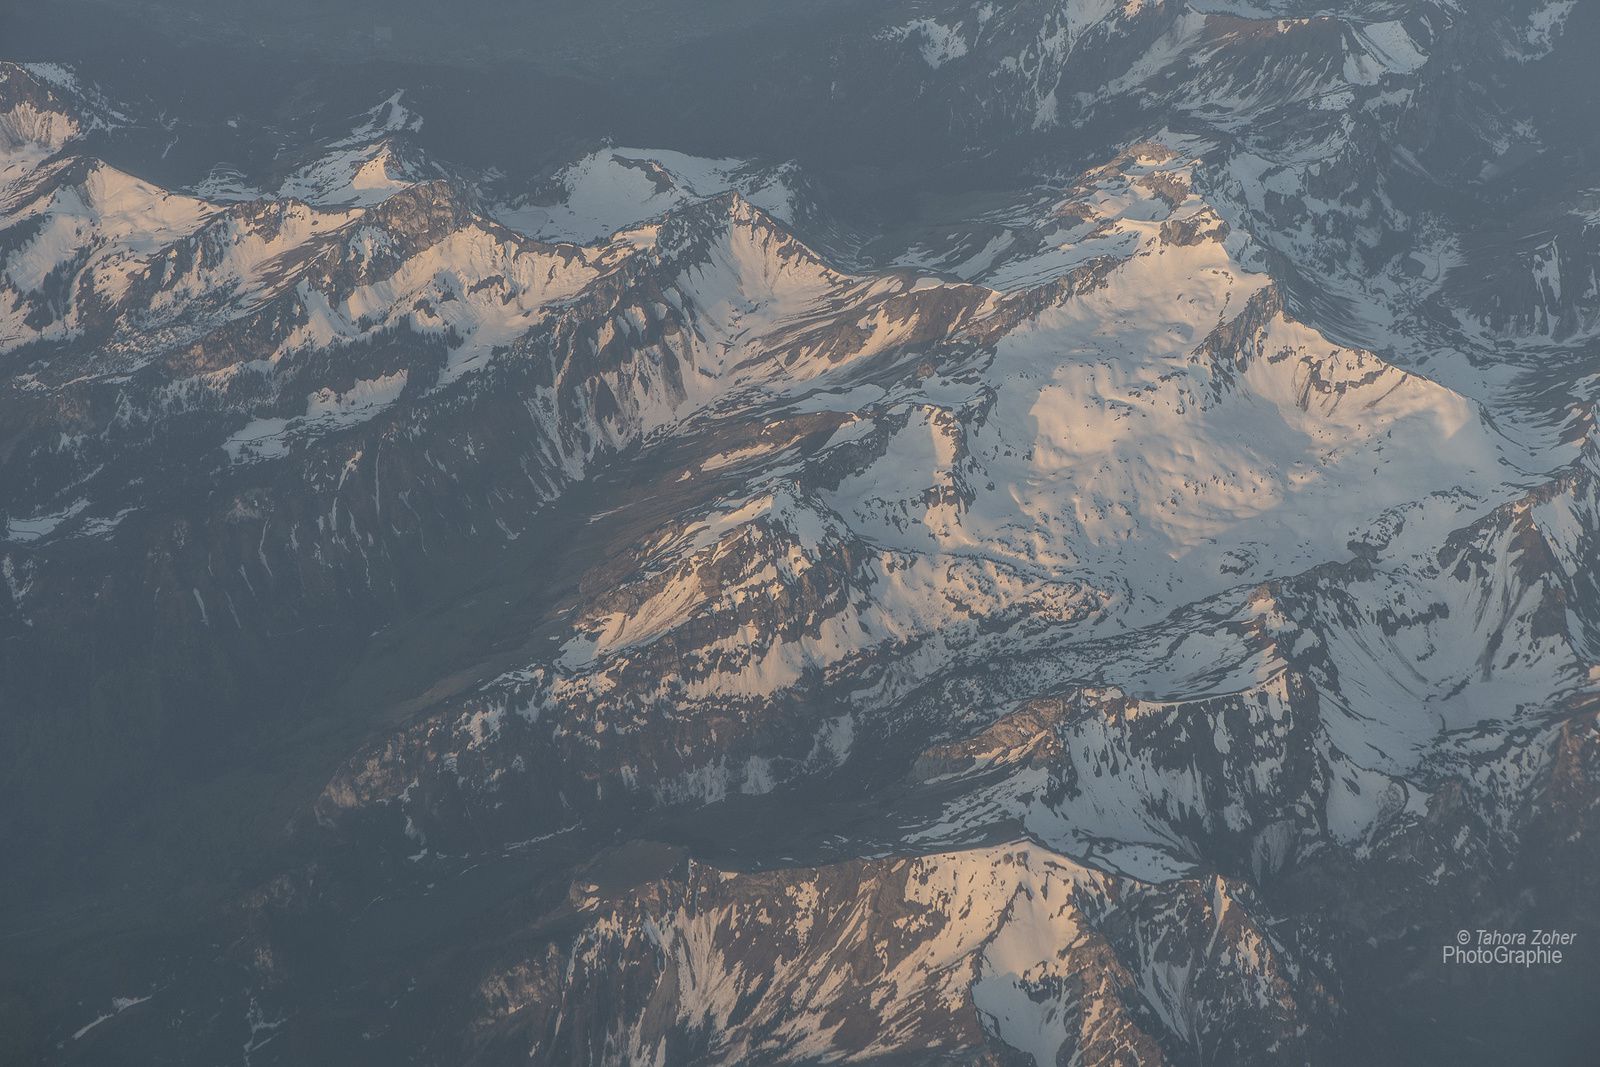 © Tahora Zoher Photographie - Le Mont Blanc vue du ciel / Boing 747 / Nikon D850 / 105mm -